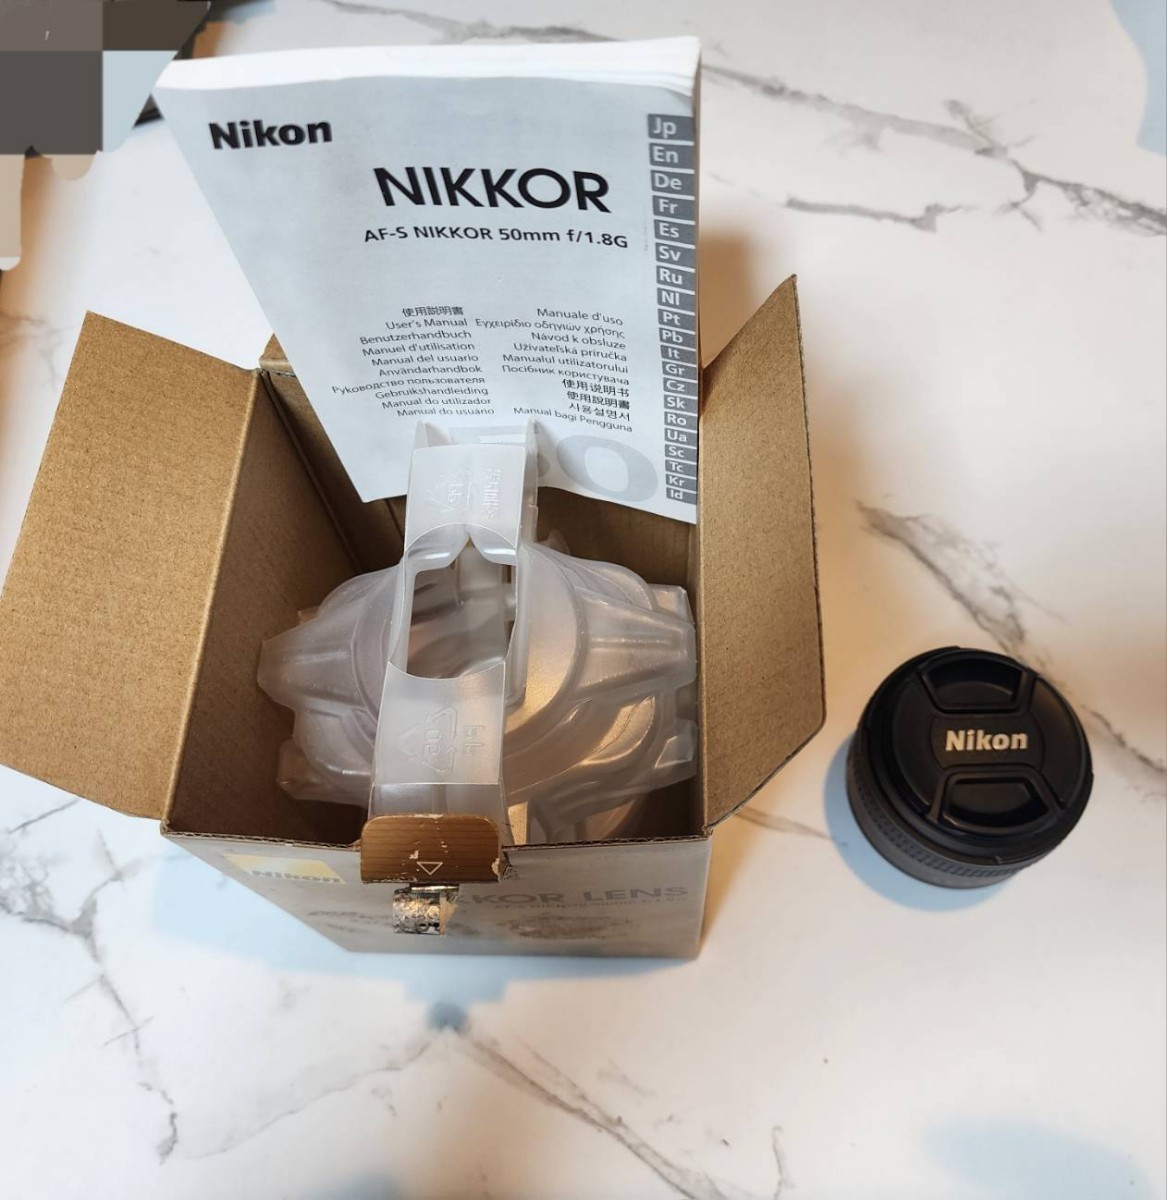 ニコン Nikon 単焦点レンズ AF-S NIKKOR 50mm f/1.8G【中古】の画像4